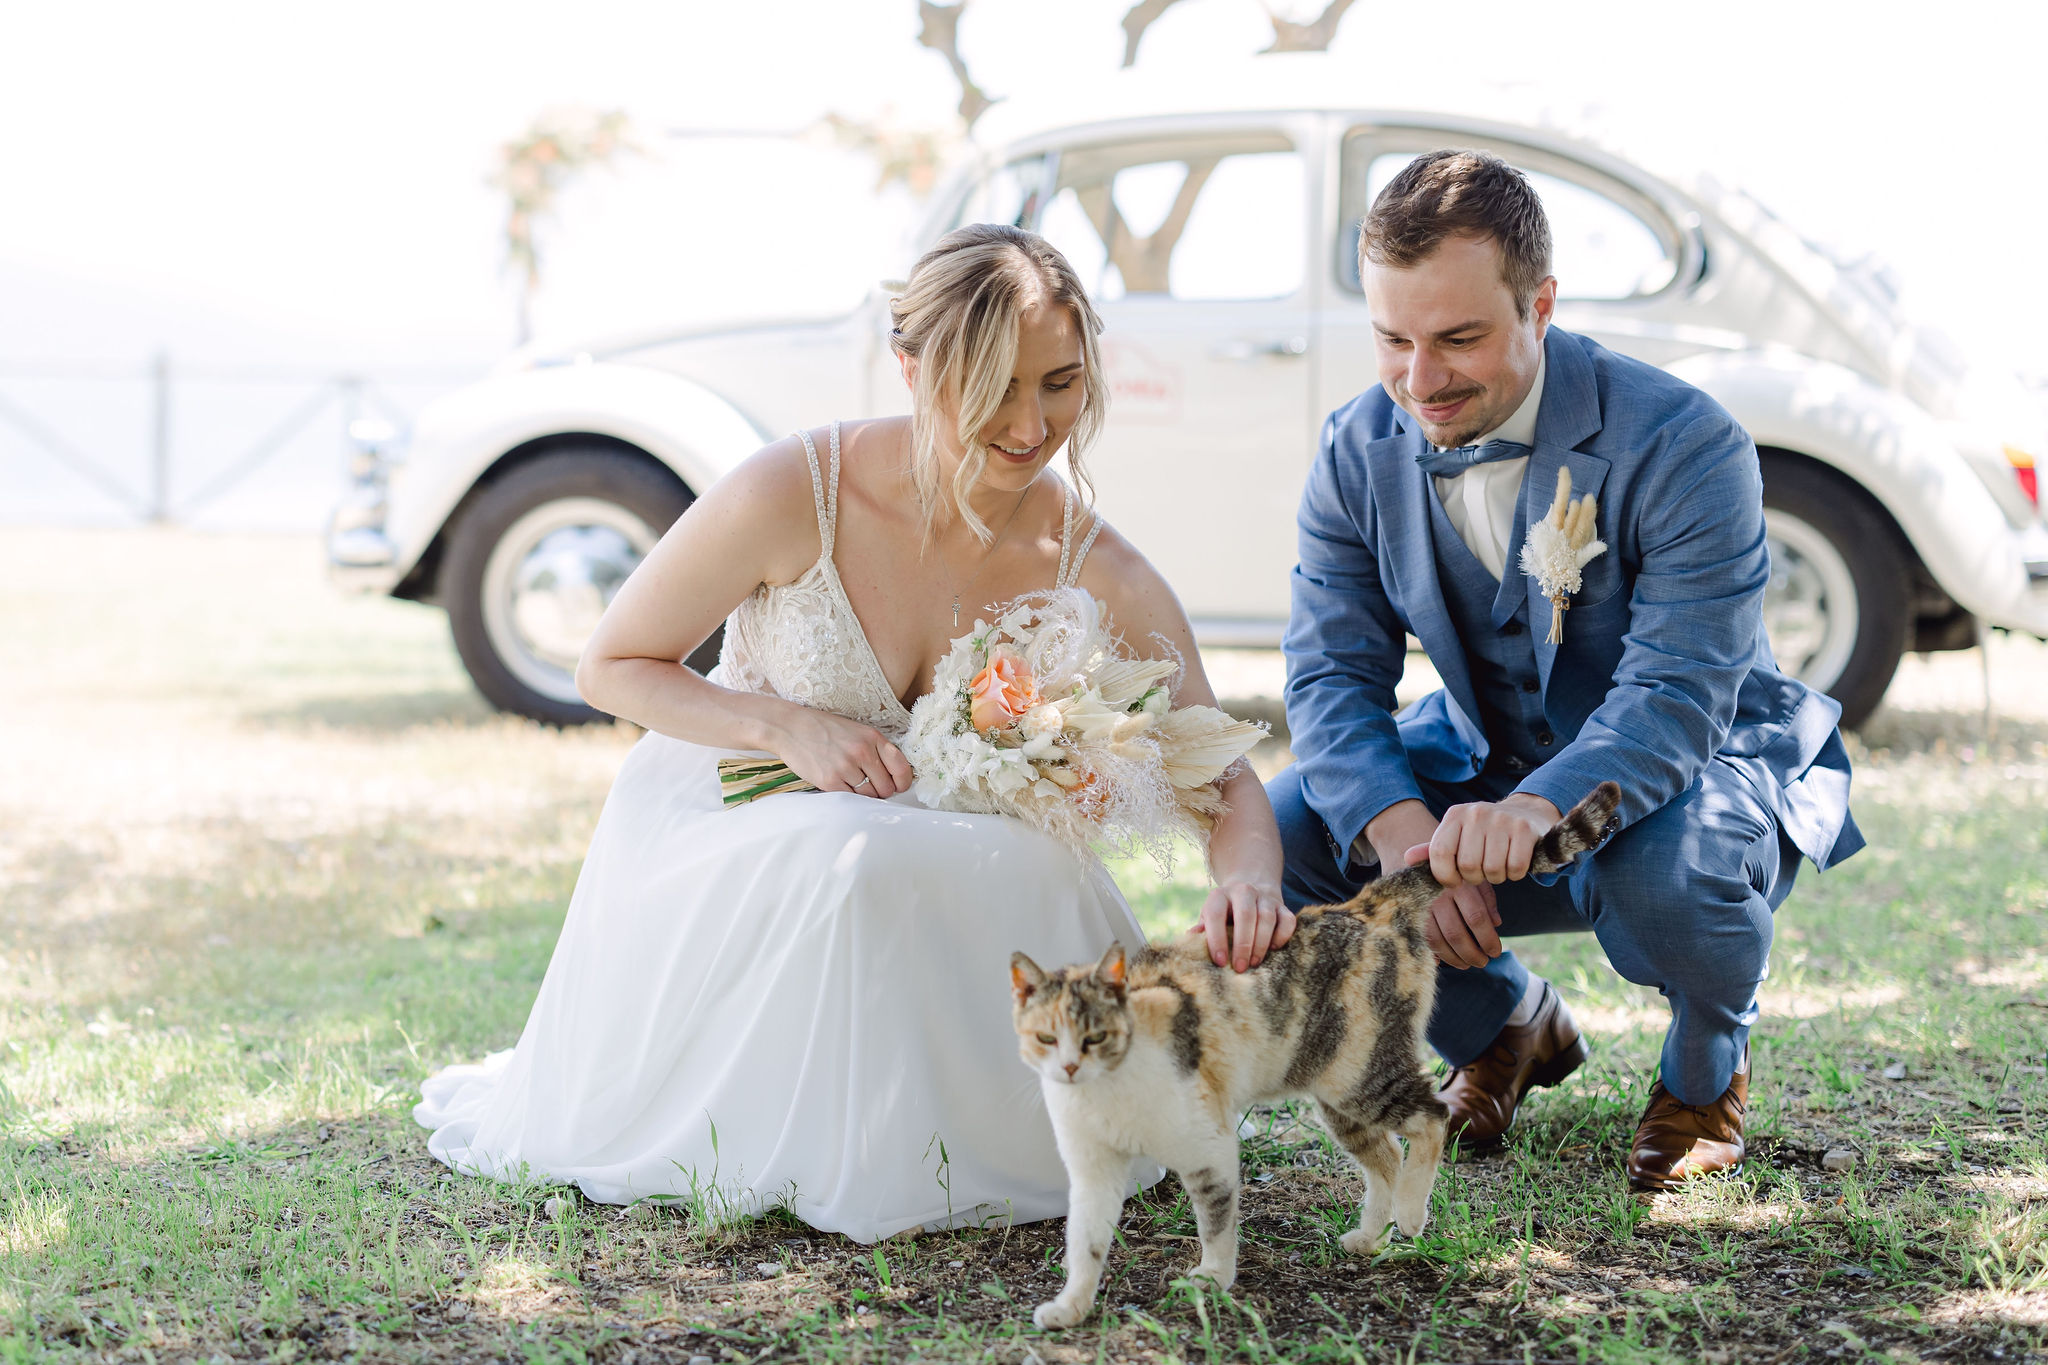 Hochzeitspaar streichelt kniend eine Katze, Brautwagen, Brautbogen im Hintergrund